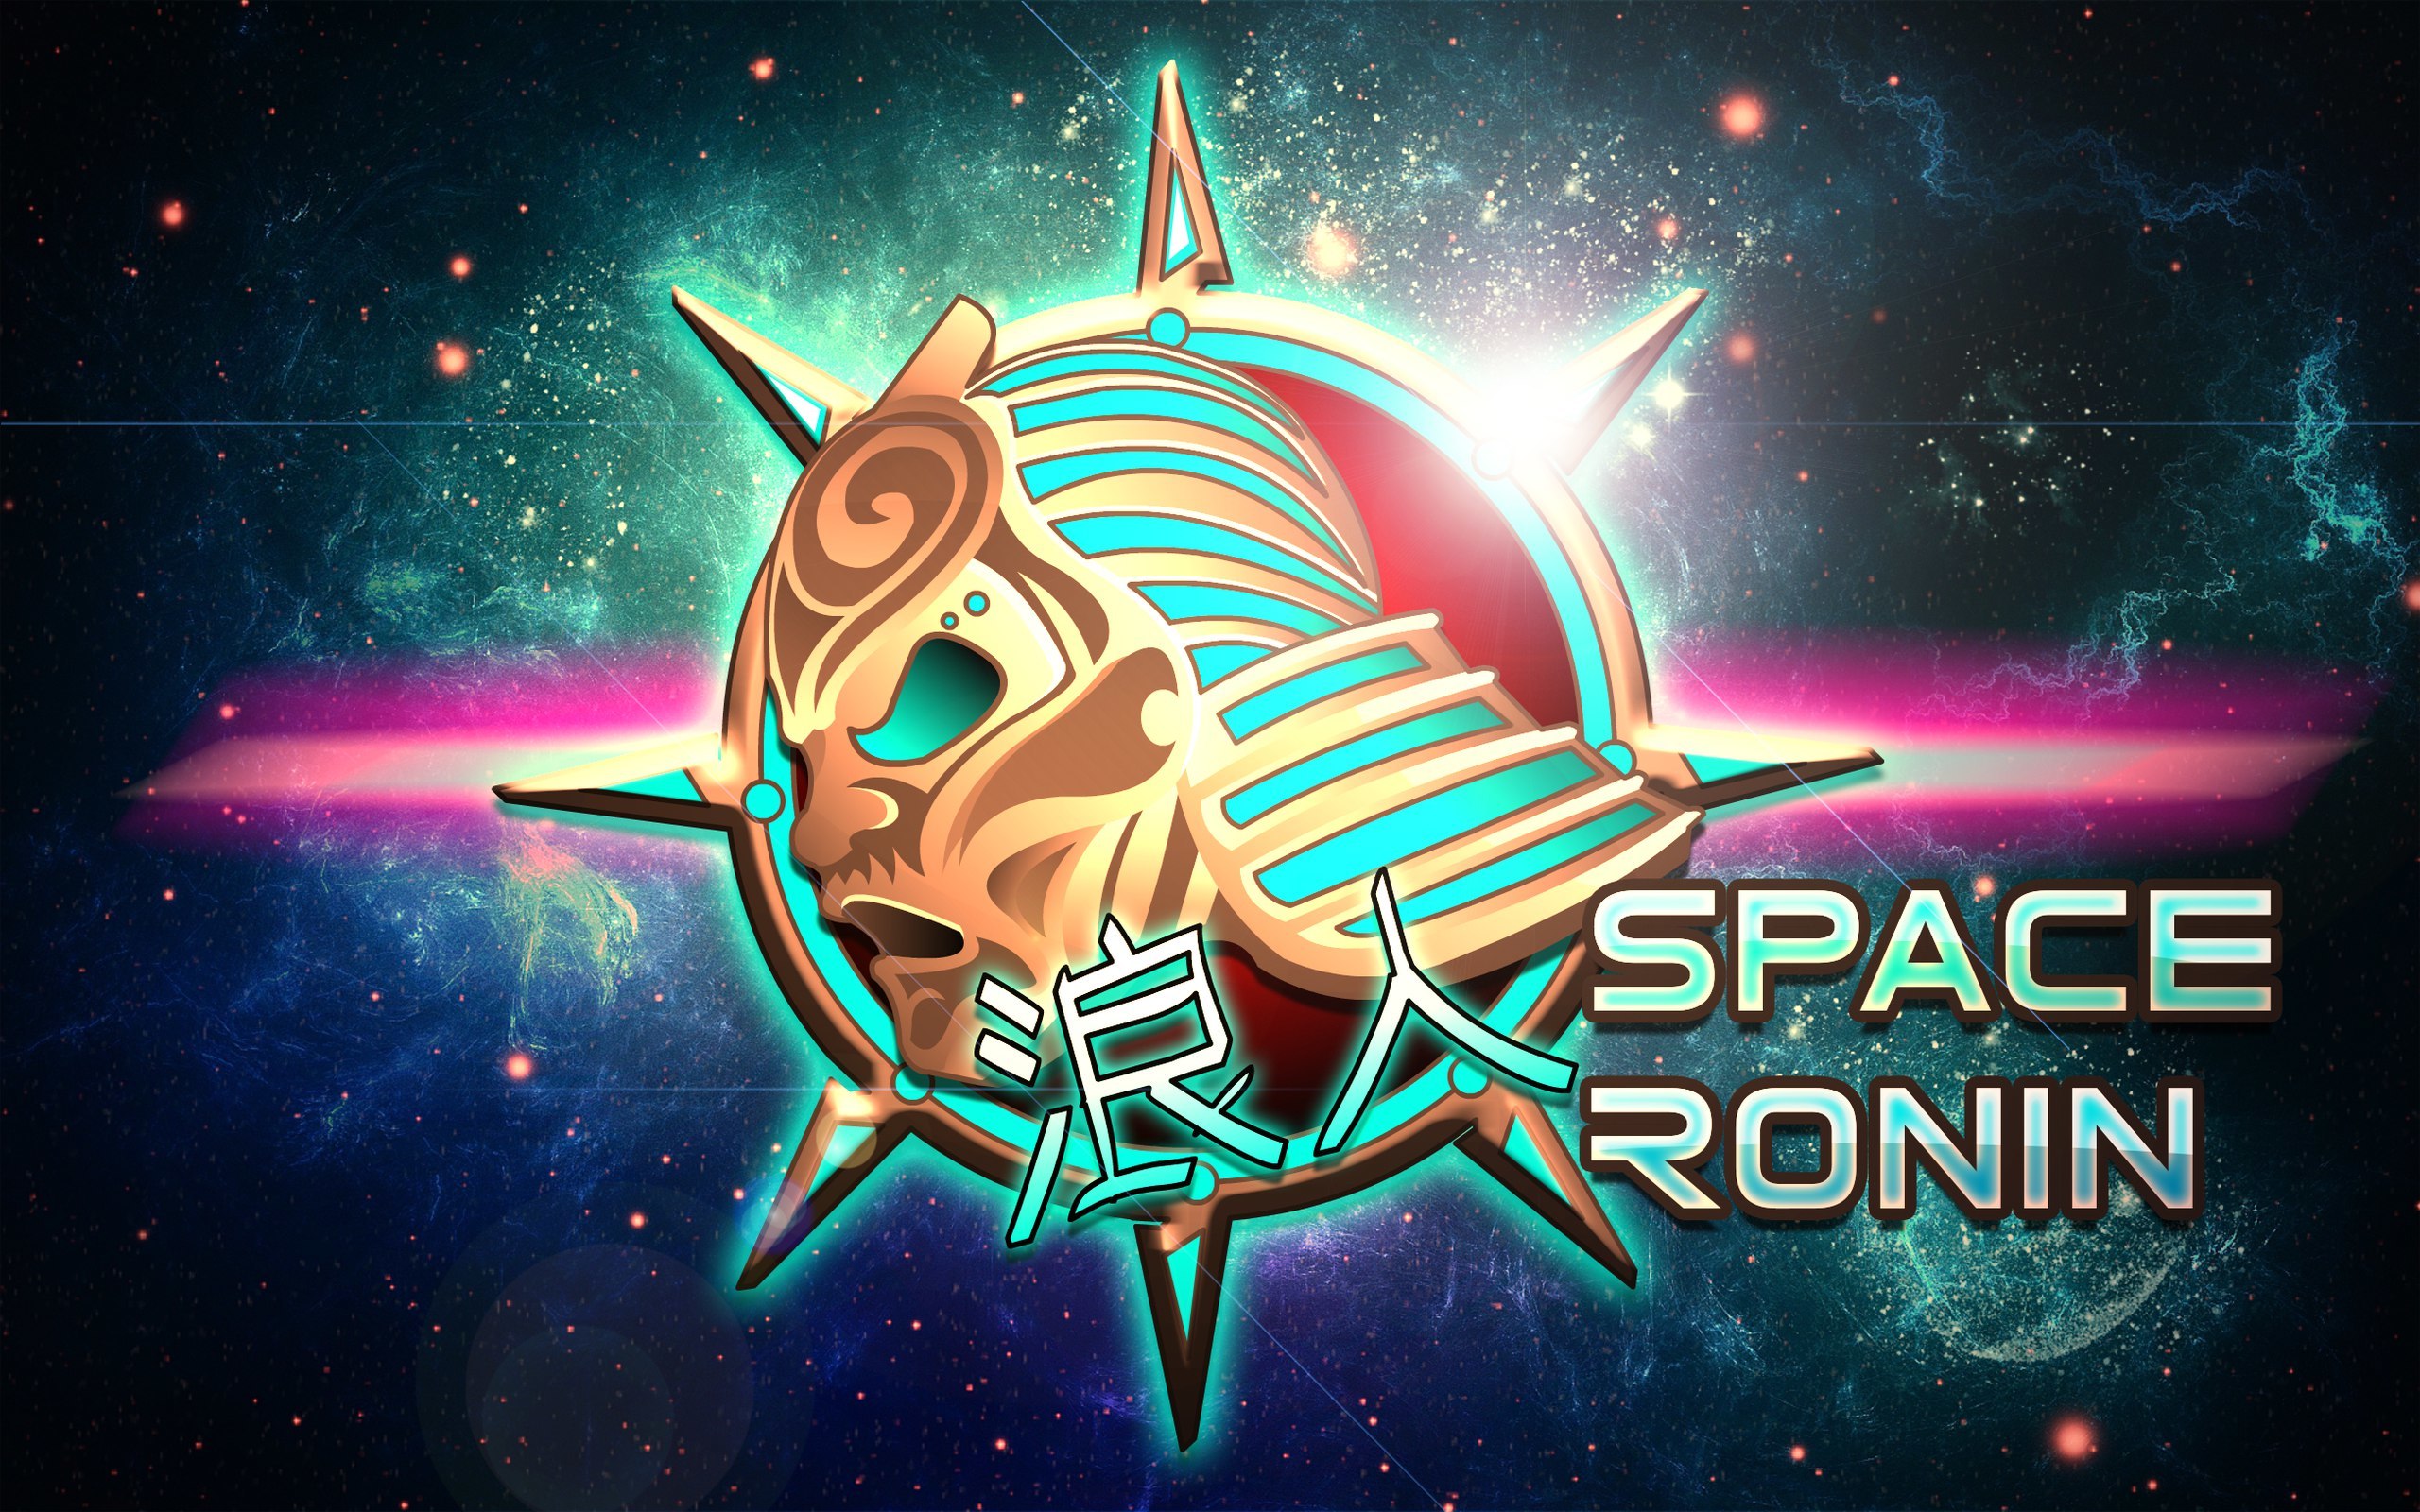 Ronin game. Ronin игра. Космический Ронин. Space Ronin. Game logo Ronin.